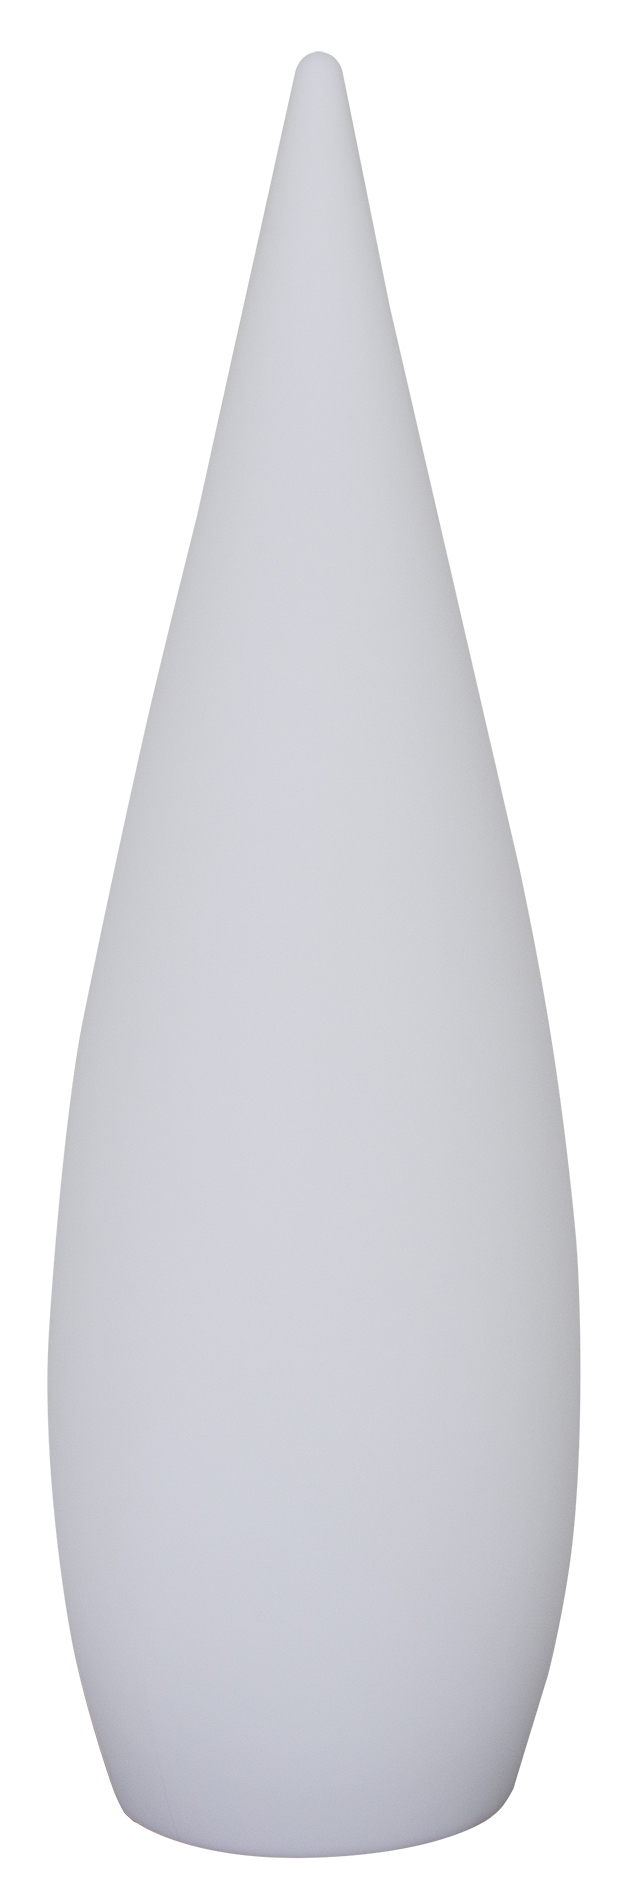 Eurotrail Cone 80/120 terraas LED lamp oplaadbaar